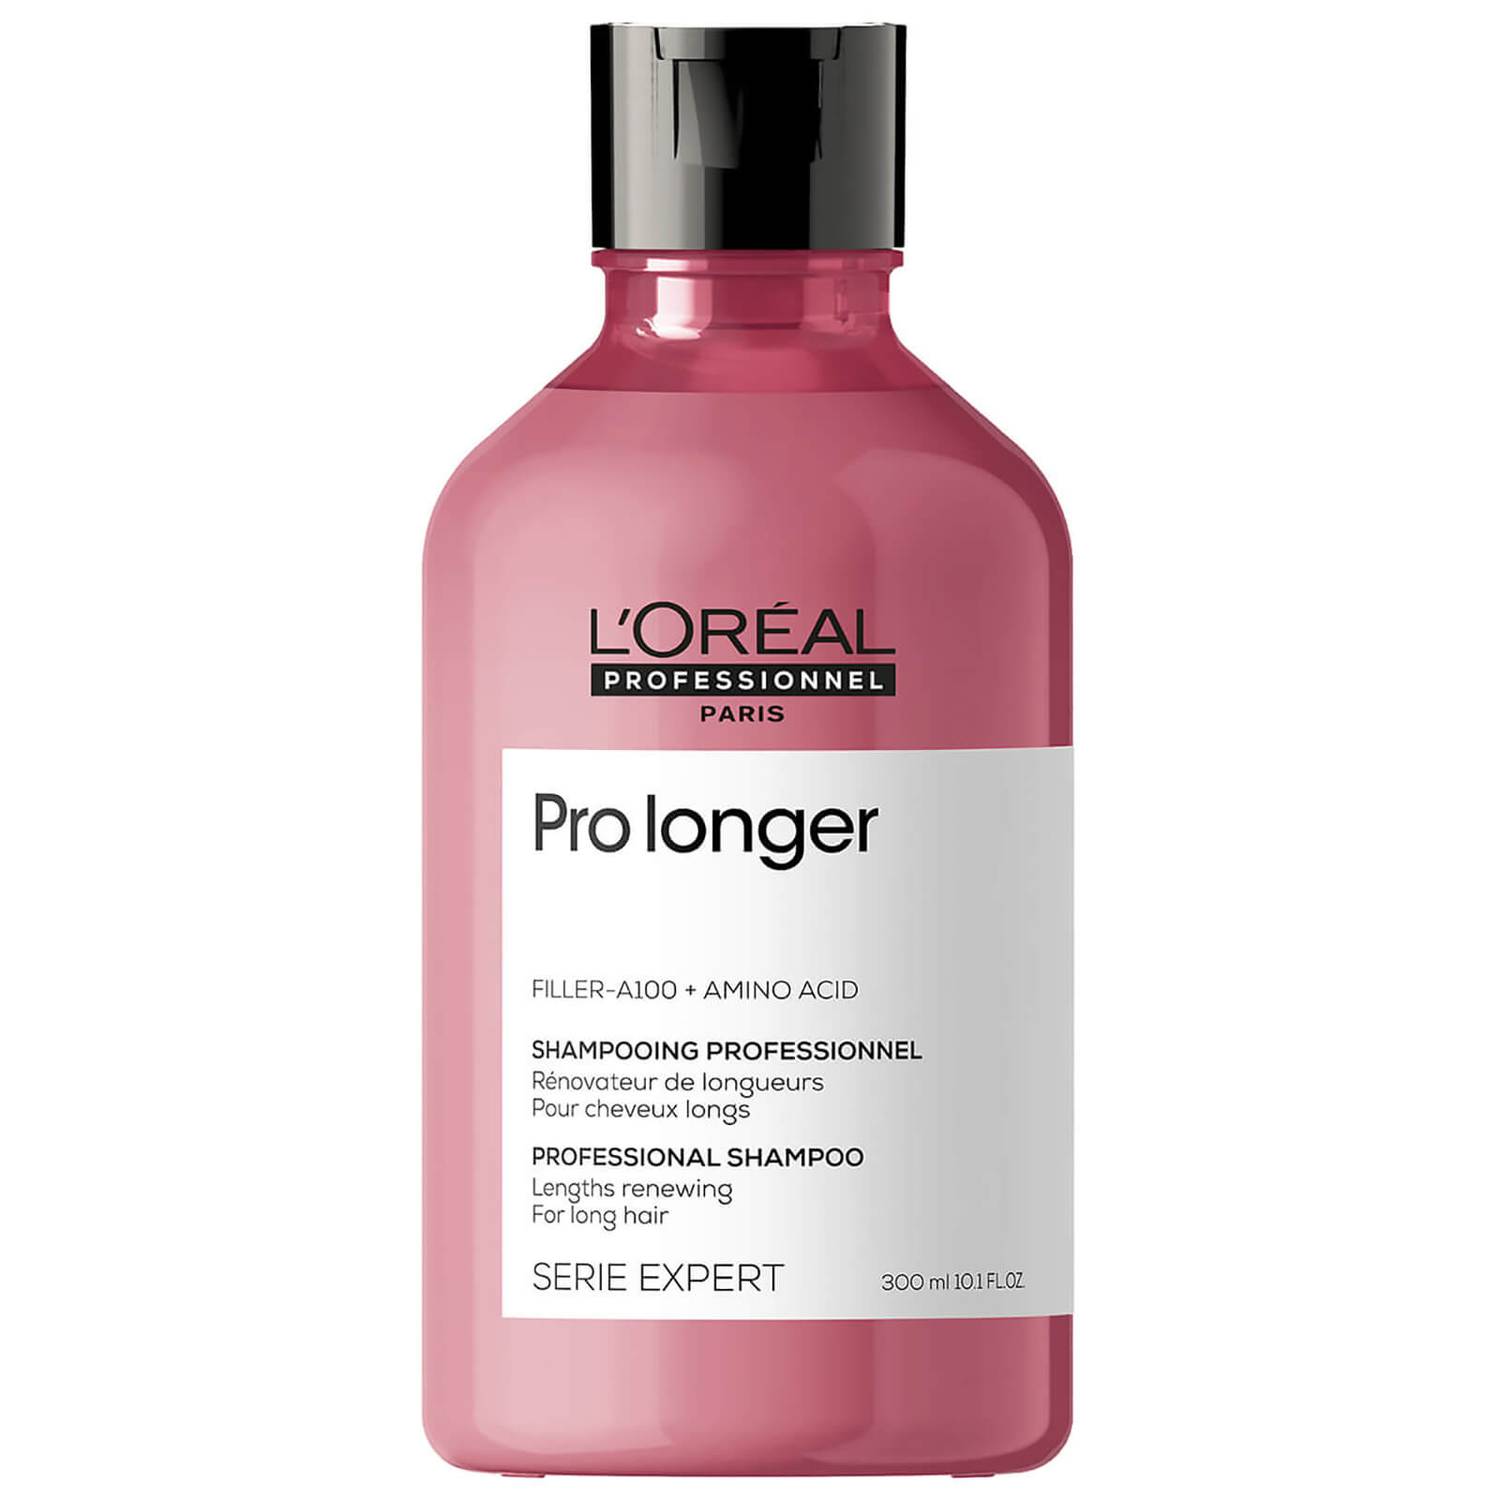 pro longer shampoo